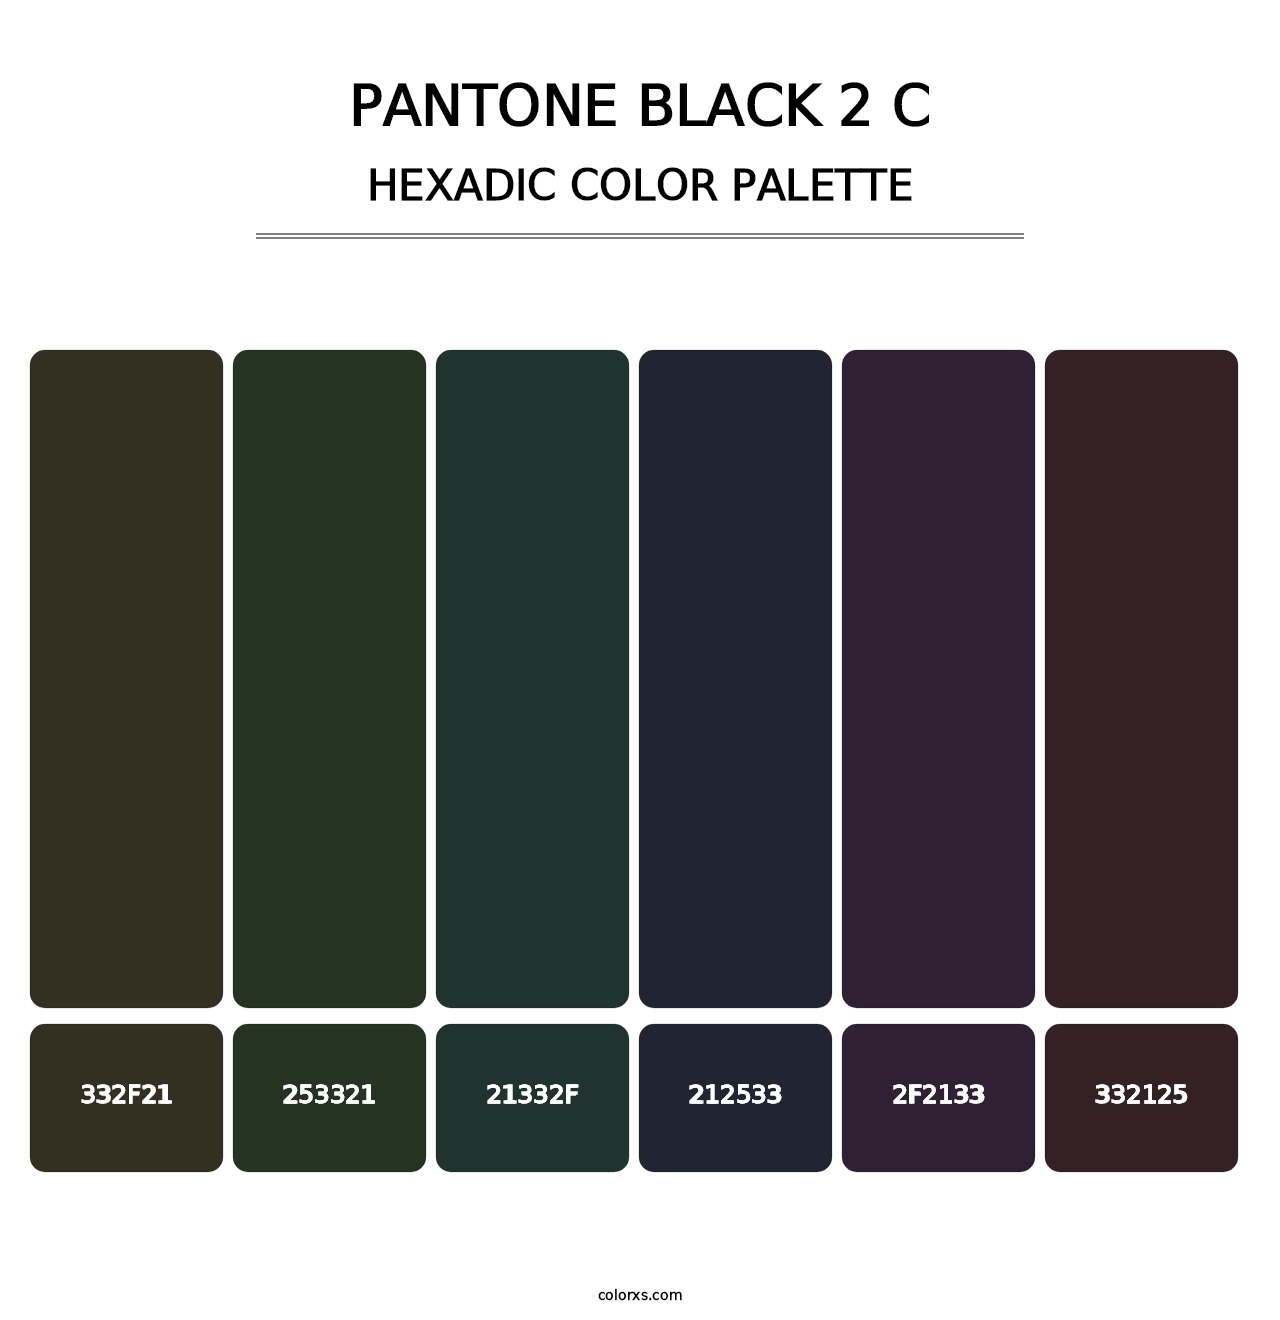 PANTONE Black 2 C - Hexadic Color Palette